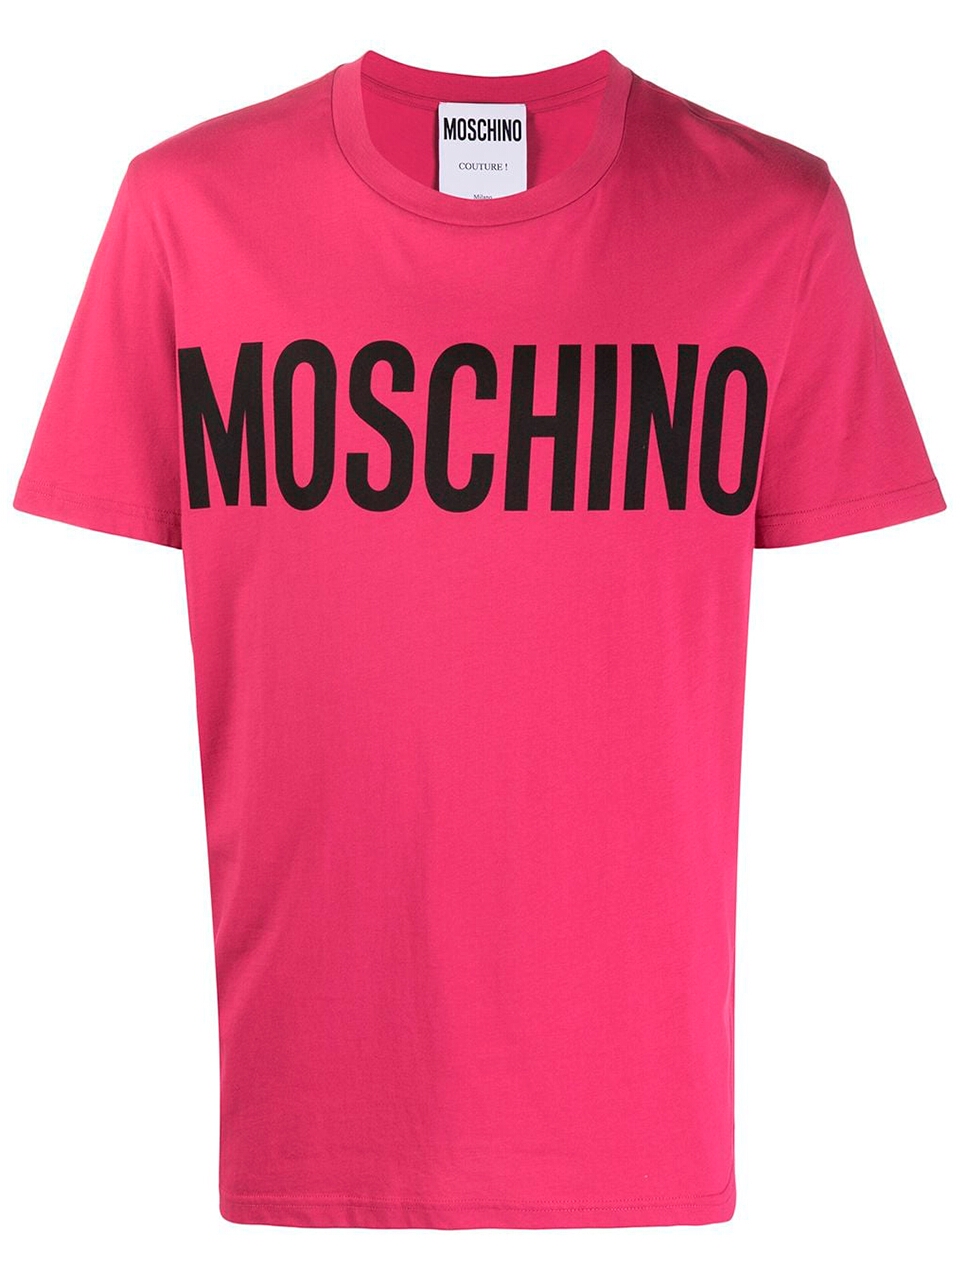 Imagem de: Camiseta Moschino Rosa Choque com Logo Preto